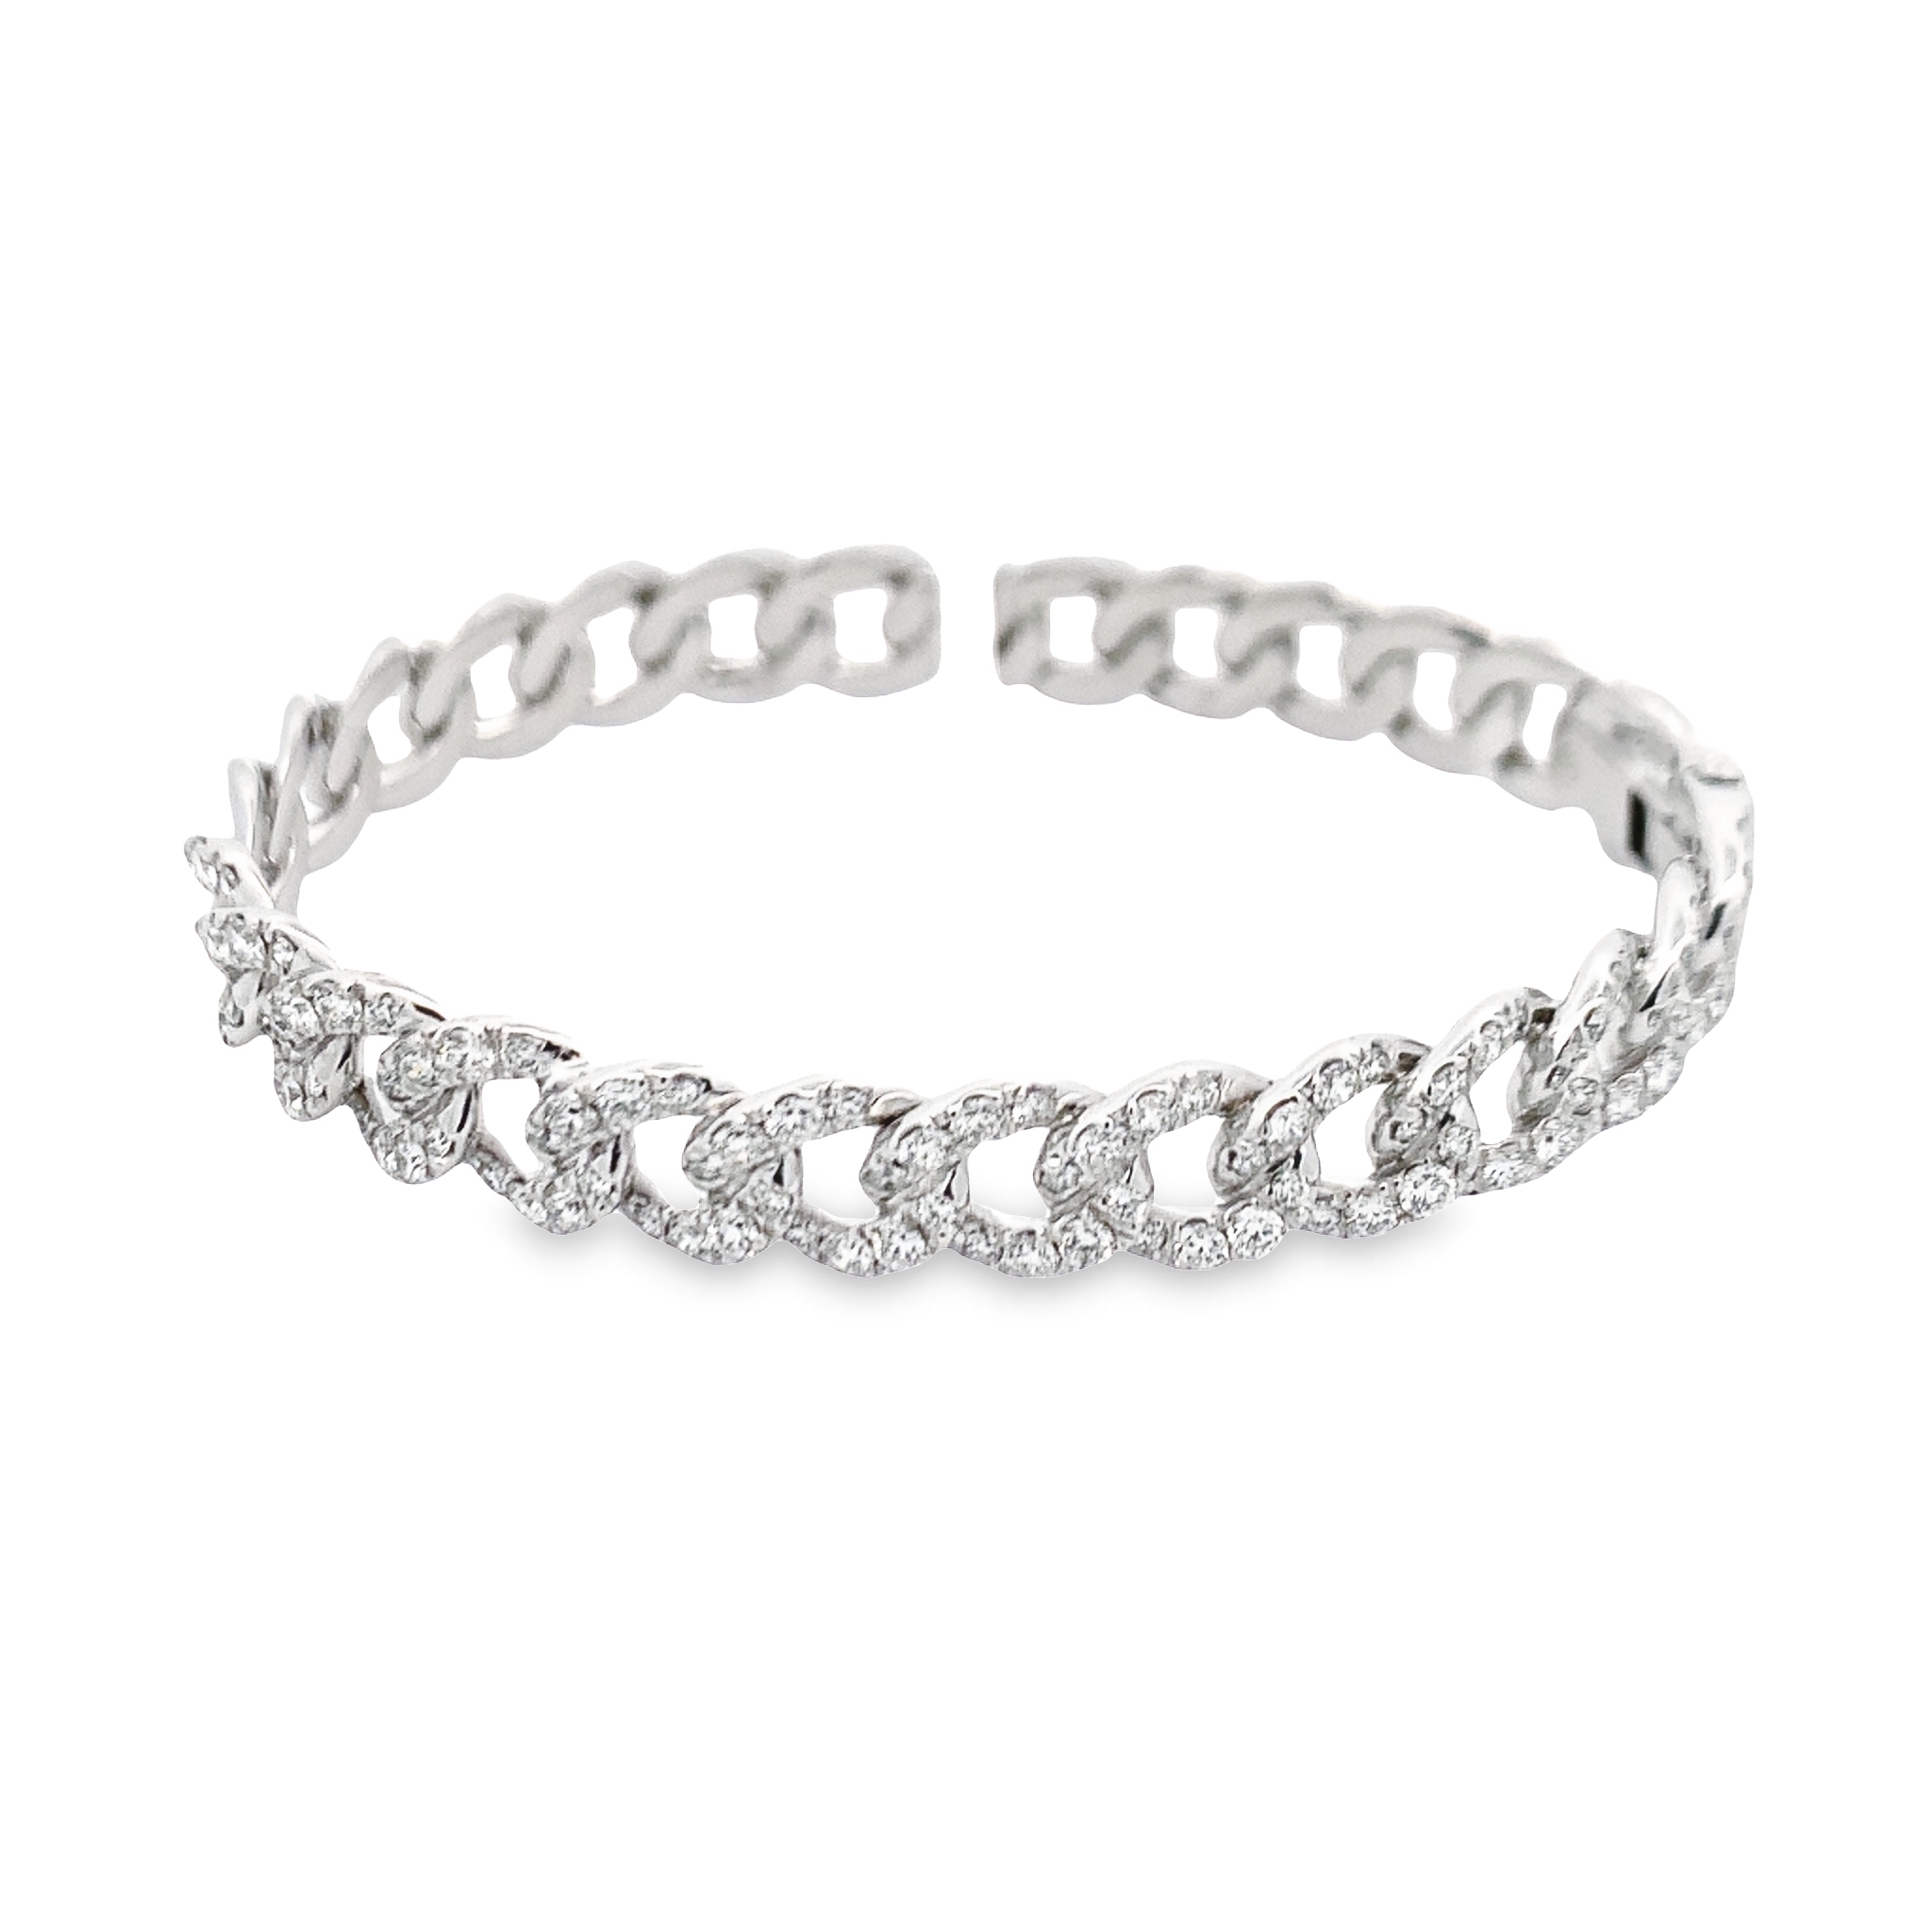 Damaso 18K White Gold Diamond Cable-Style Bangle Bracelet